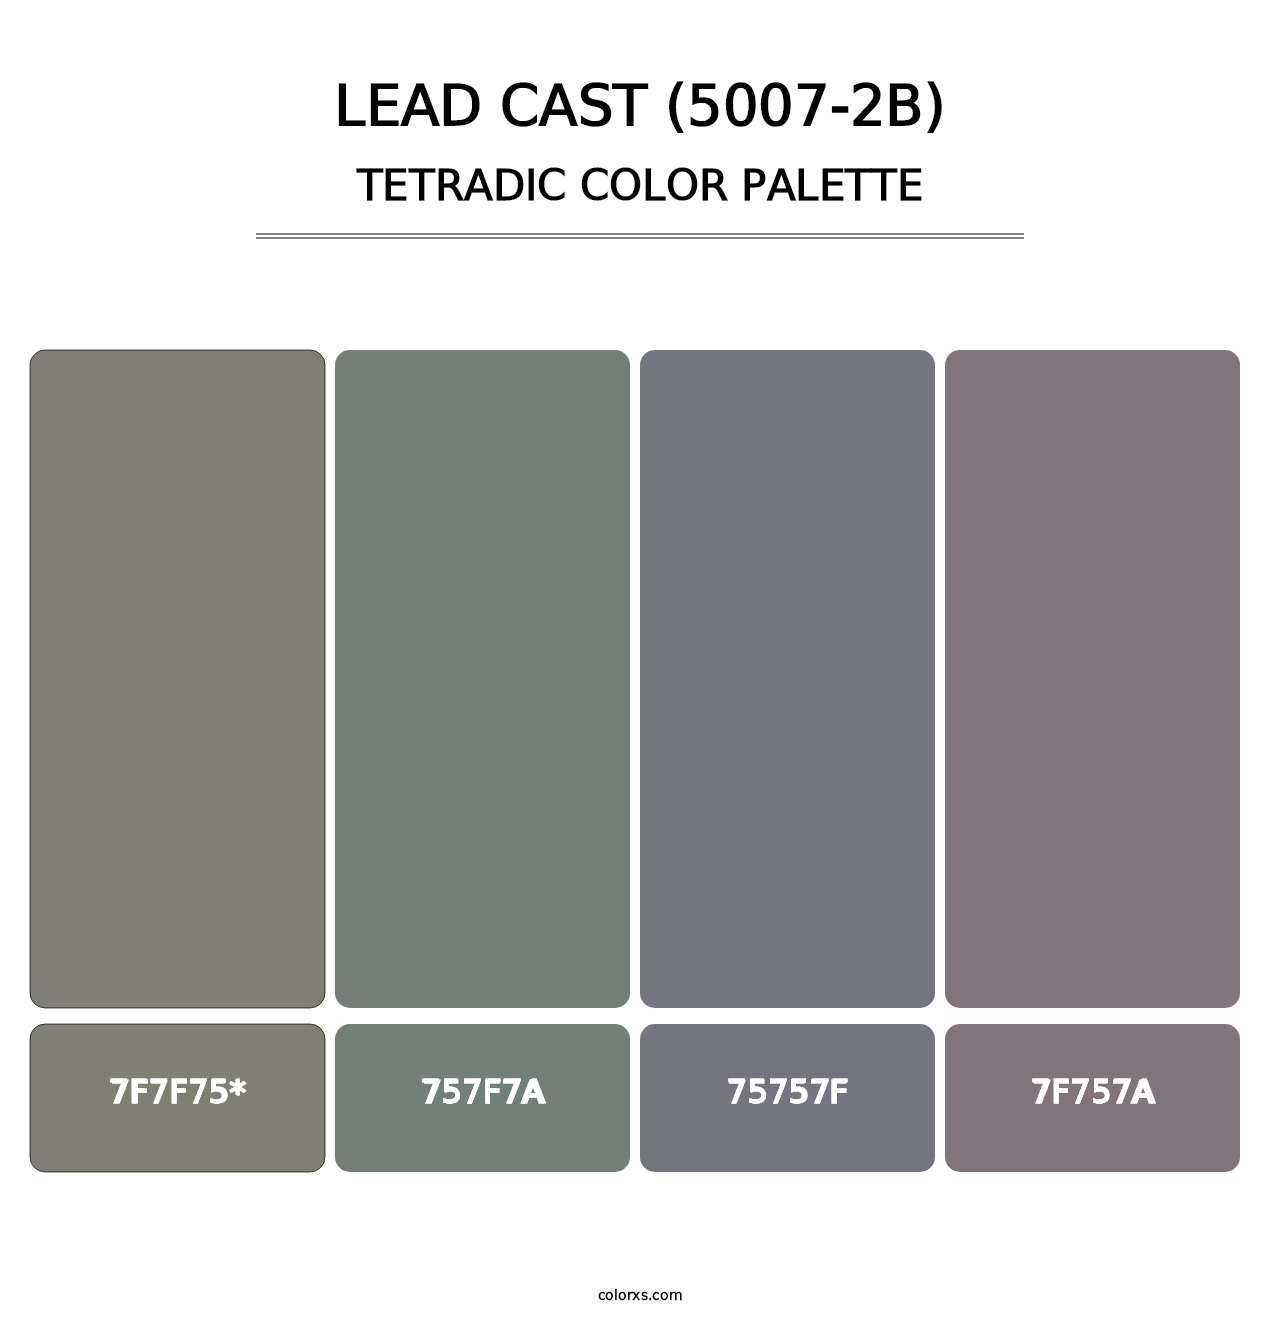 Lead Cast (5007-2B) - Tetradic Color Palette